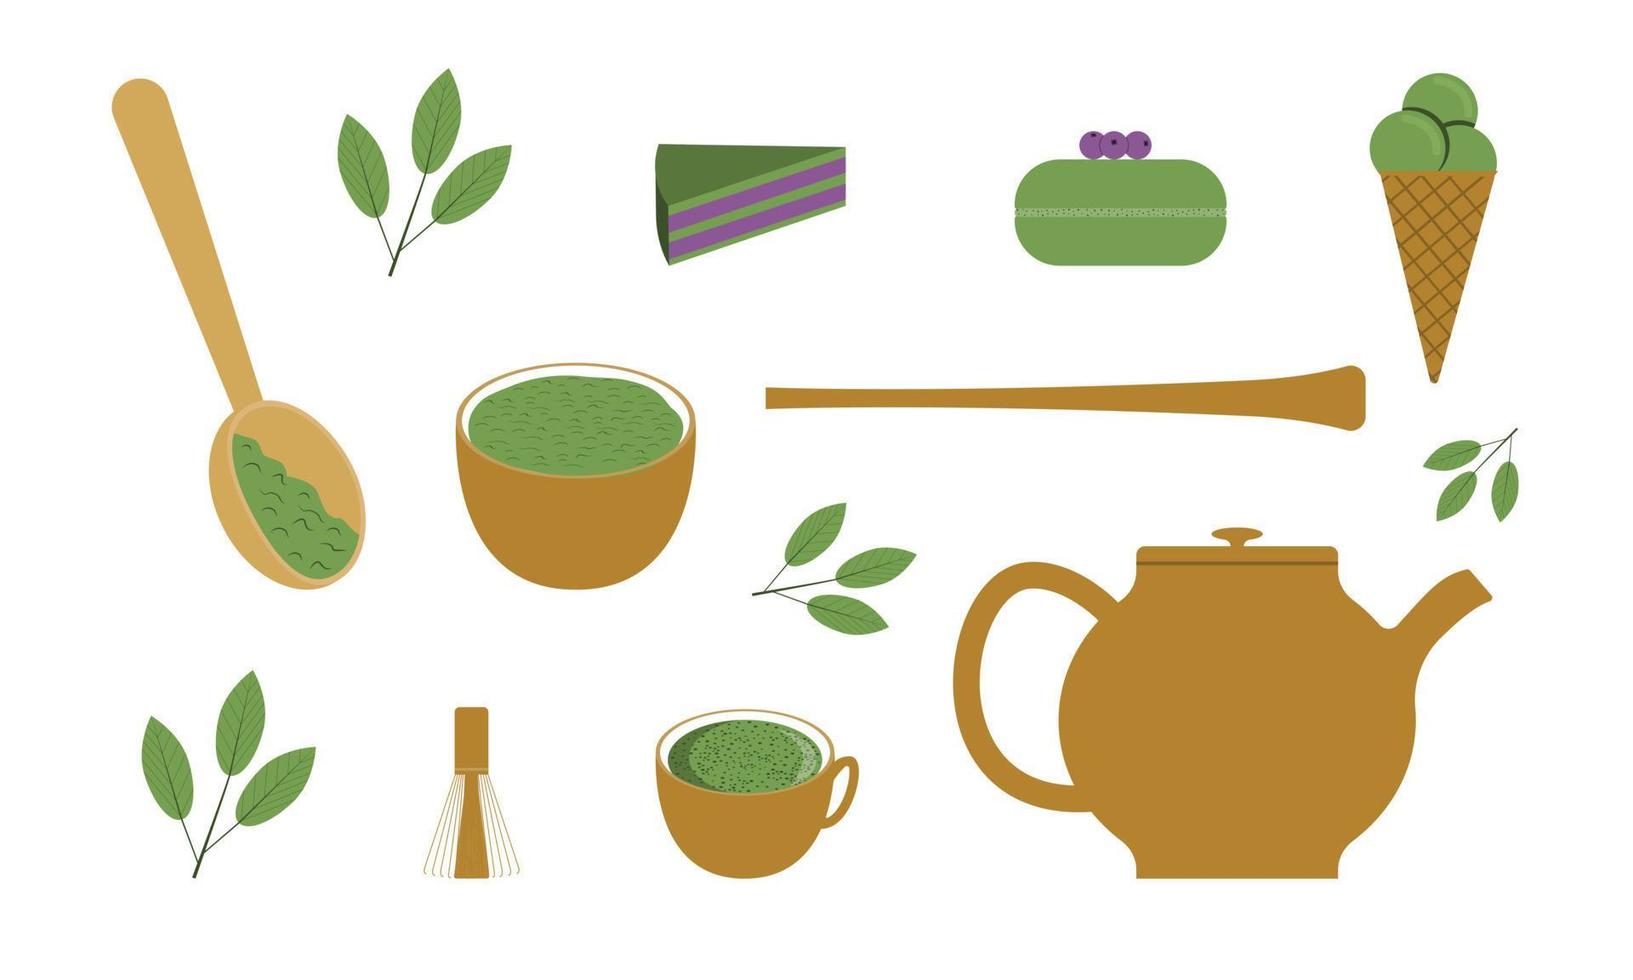 definido para uma festa de chá do matcha. chá orgânico e pó com ferramentas para a cerimônia do chá e produtos do matcha. vetor